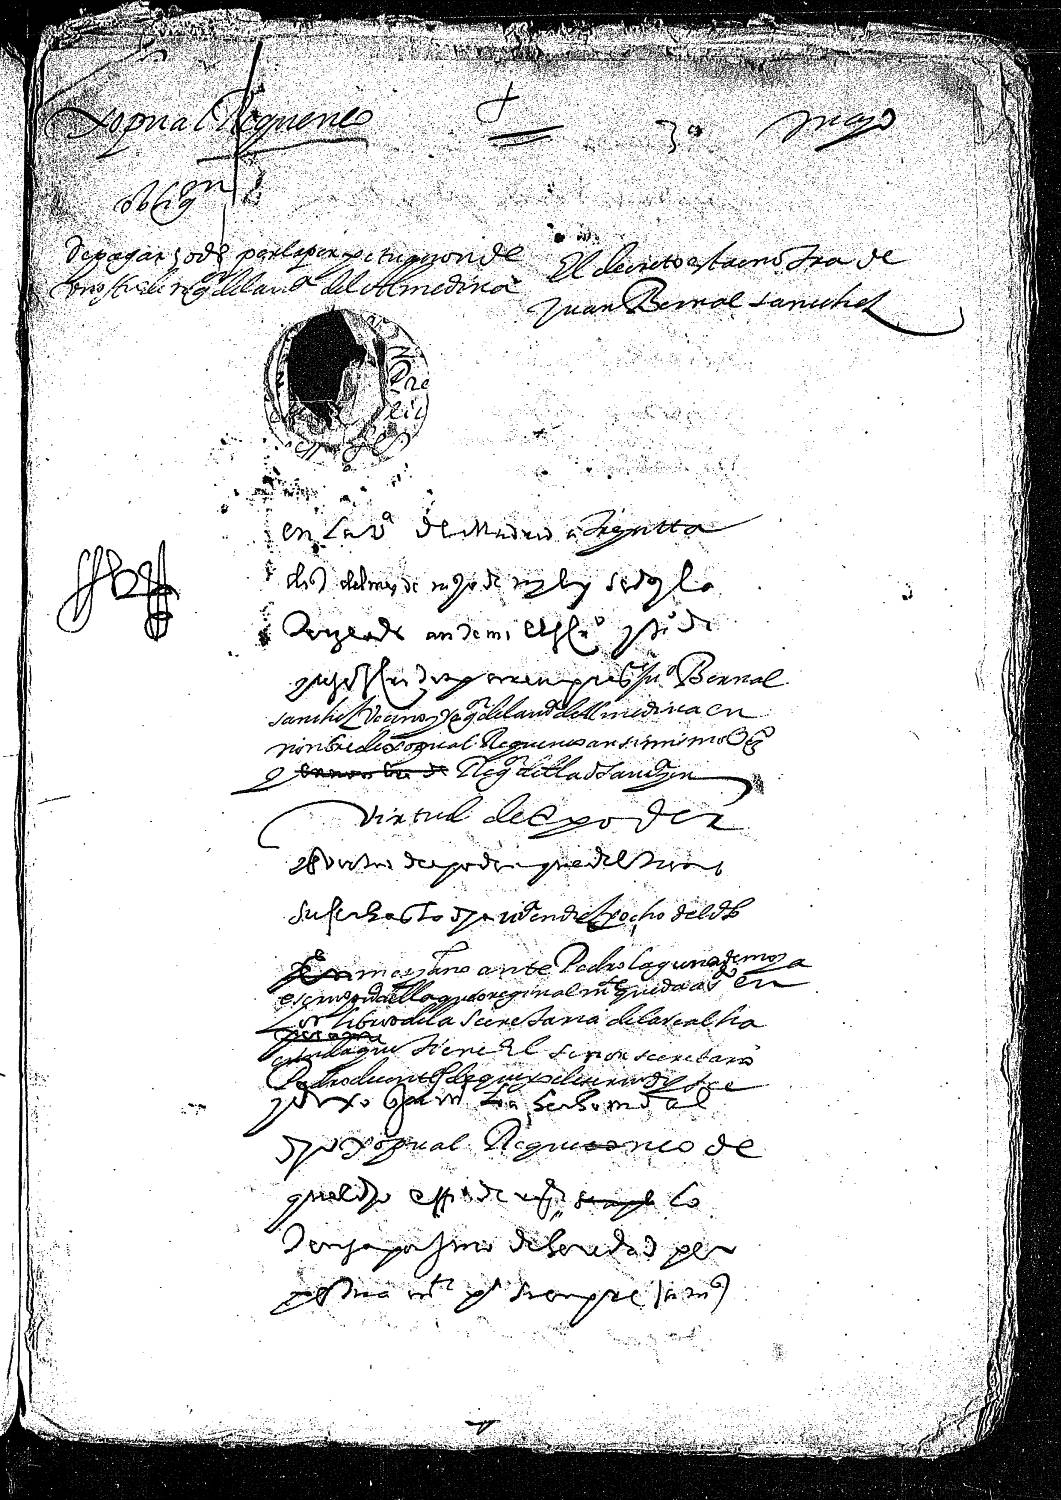 Acta notarial dando fe de la obligación de Juan Bernal Sánchez, en nombre de Cristóbal Recuenco, vecino y regidor de Almedina, para pagar 50 ducados por la perpetuación de su oficio.